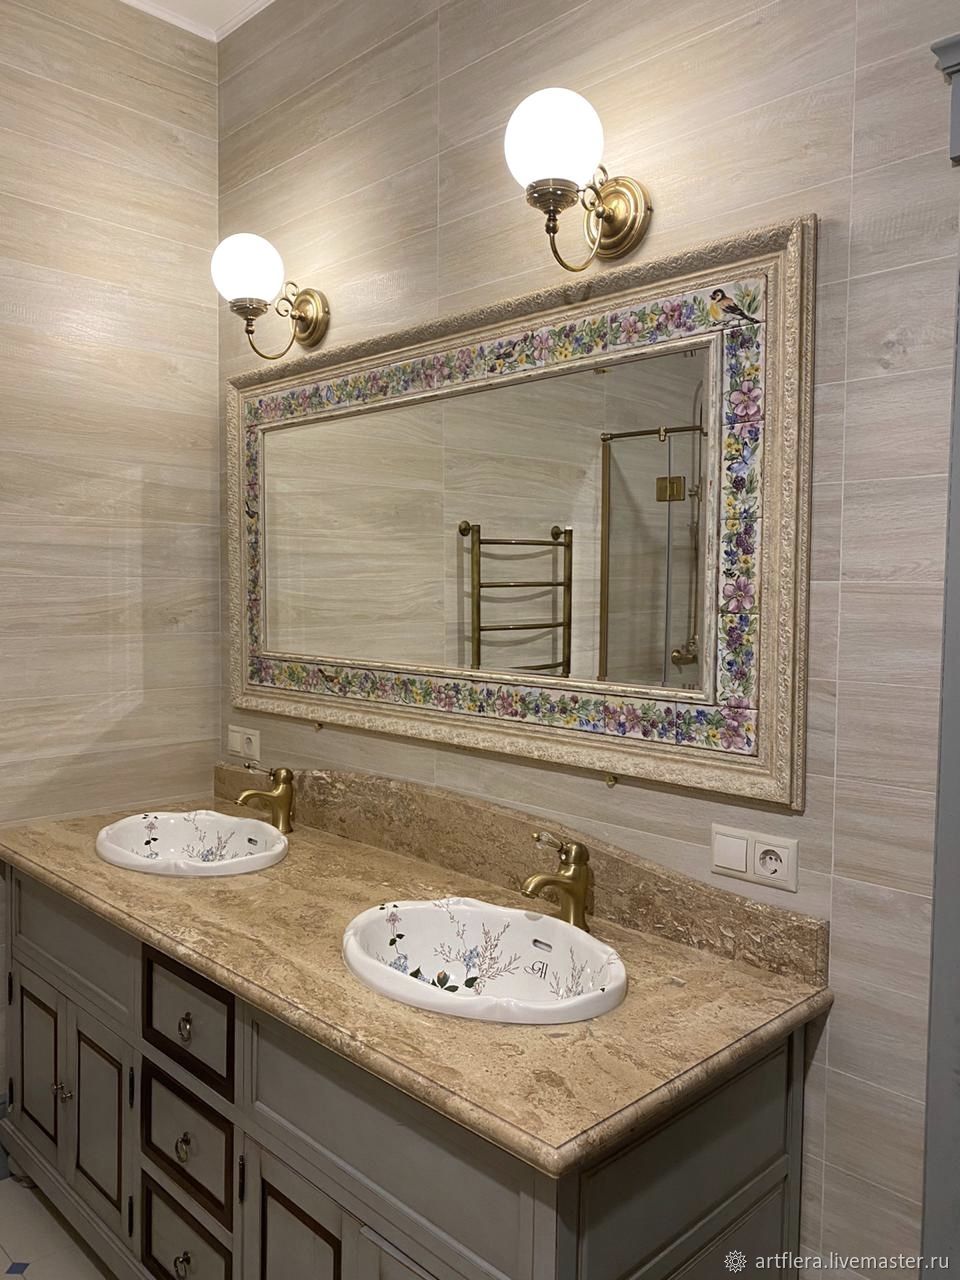 Зеркала в плитке ванной комнаты. Зеркало для ванной комнаты. Зеркало в ванной в стиле Прованс. Дизайнерские зеркала в ванную комнату. Зеркало в ванную комнату в стиле Прованс.